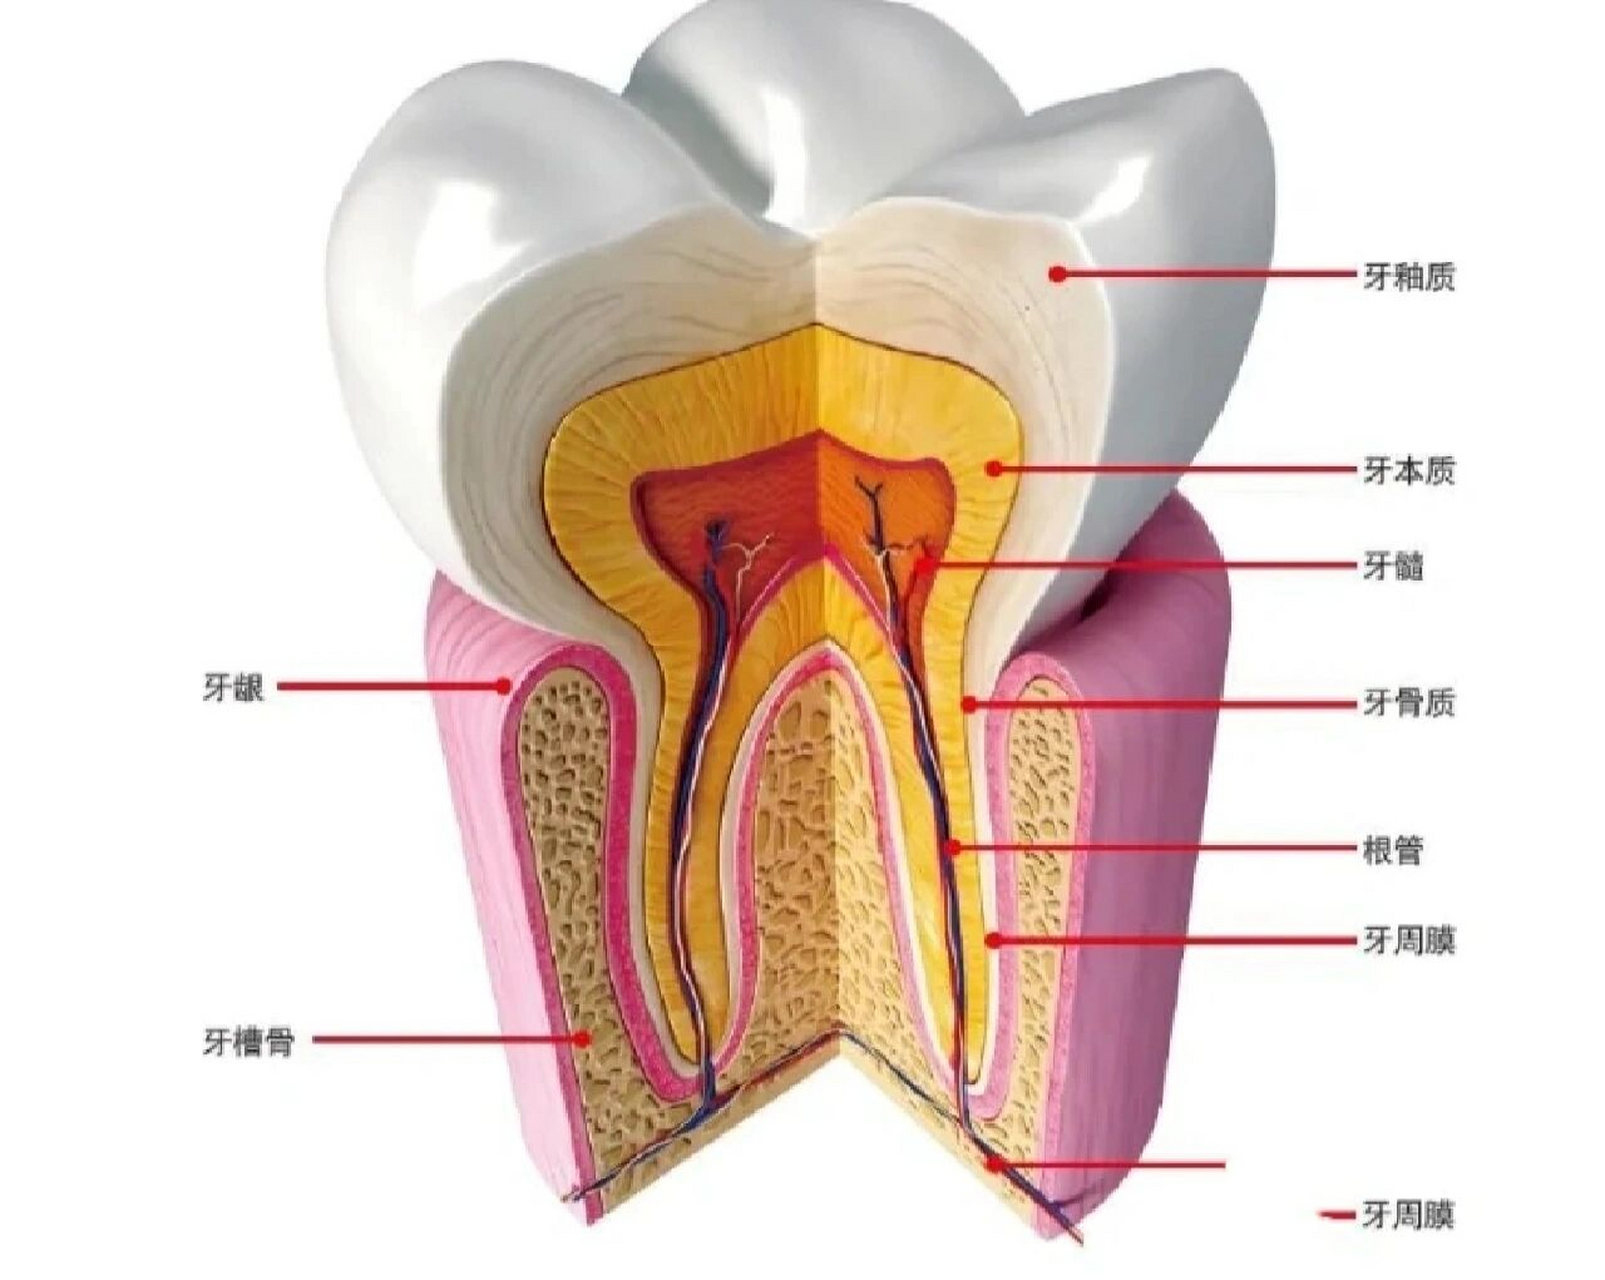 关于牙齿的基本知识 关于牙齿基本知识(一) 从外形观察: 分为:牙冠